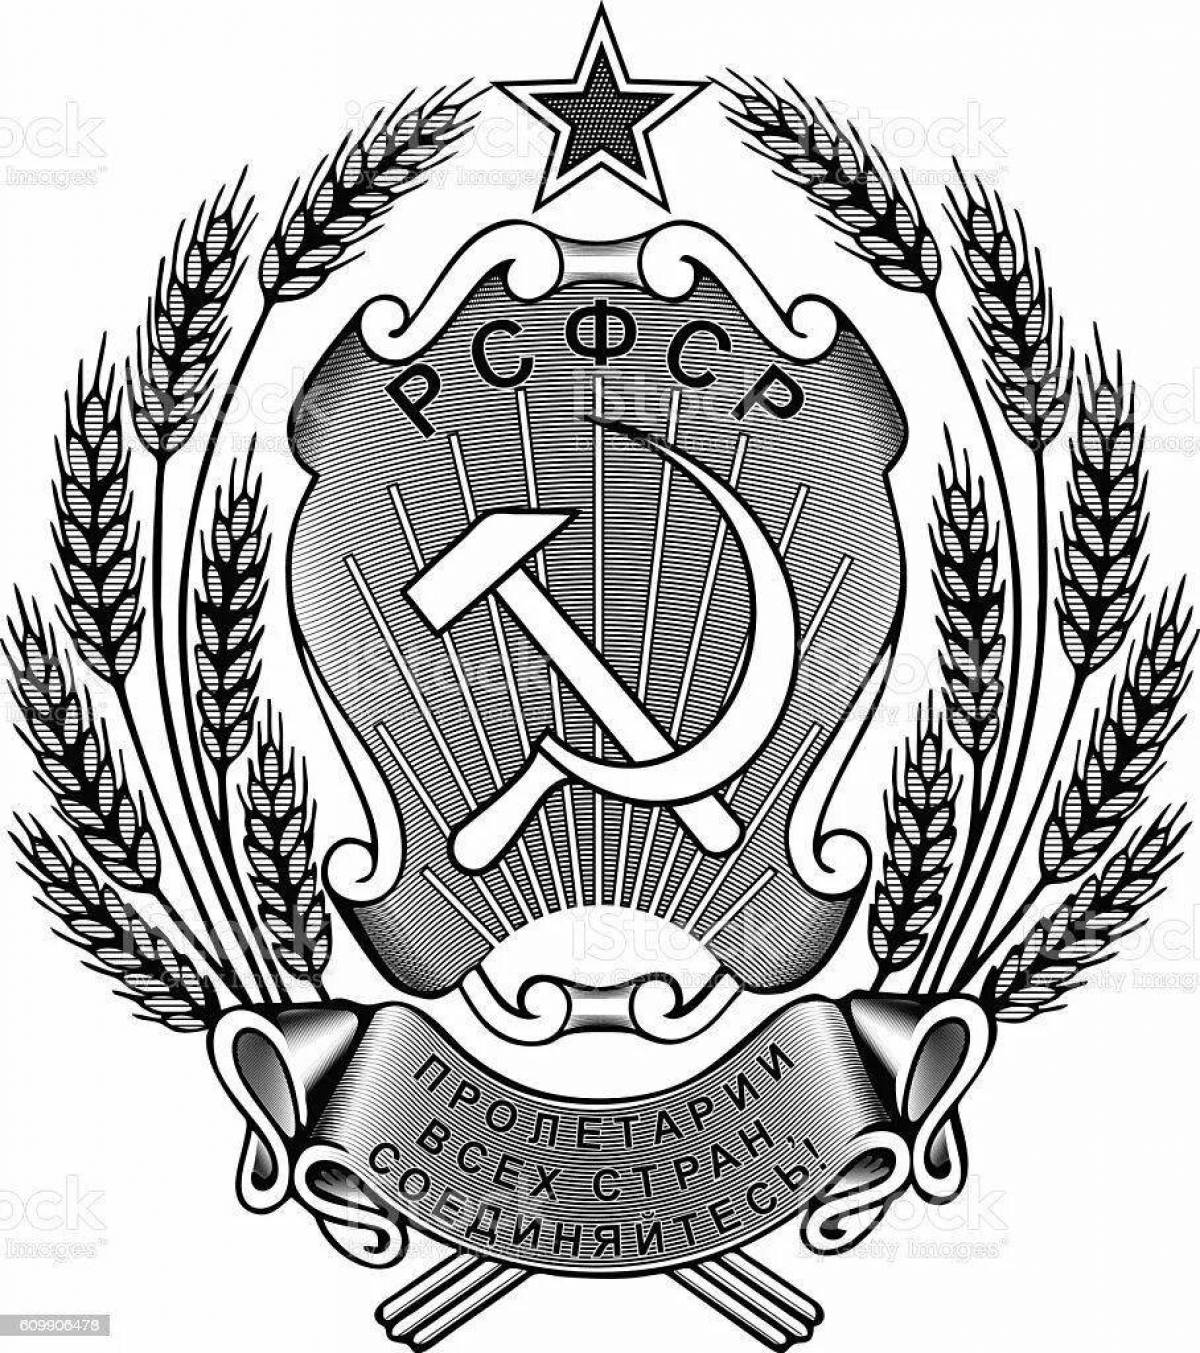 Величественная раскраска герб советского союза